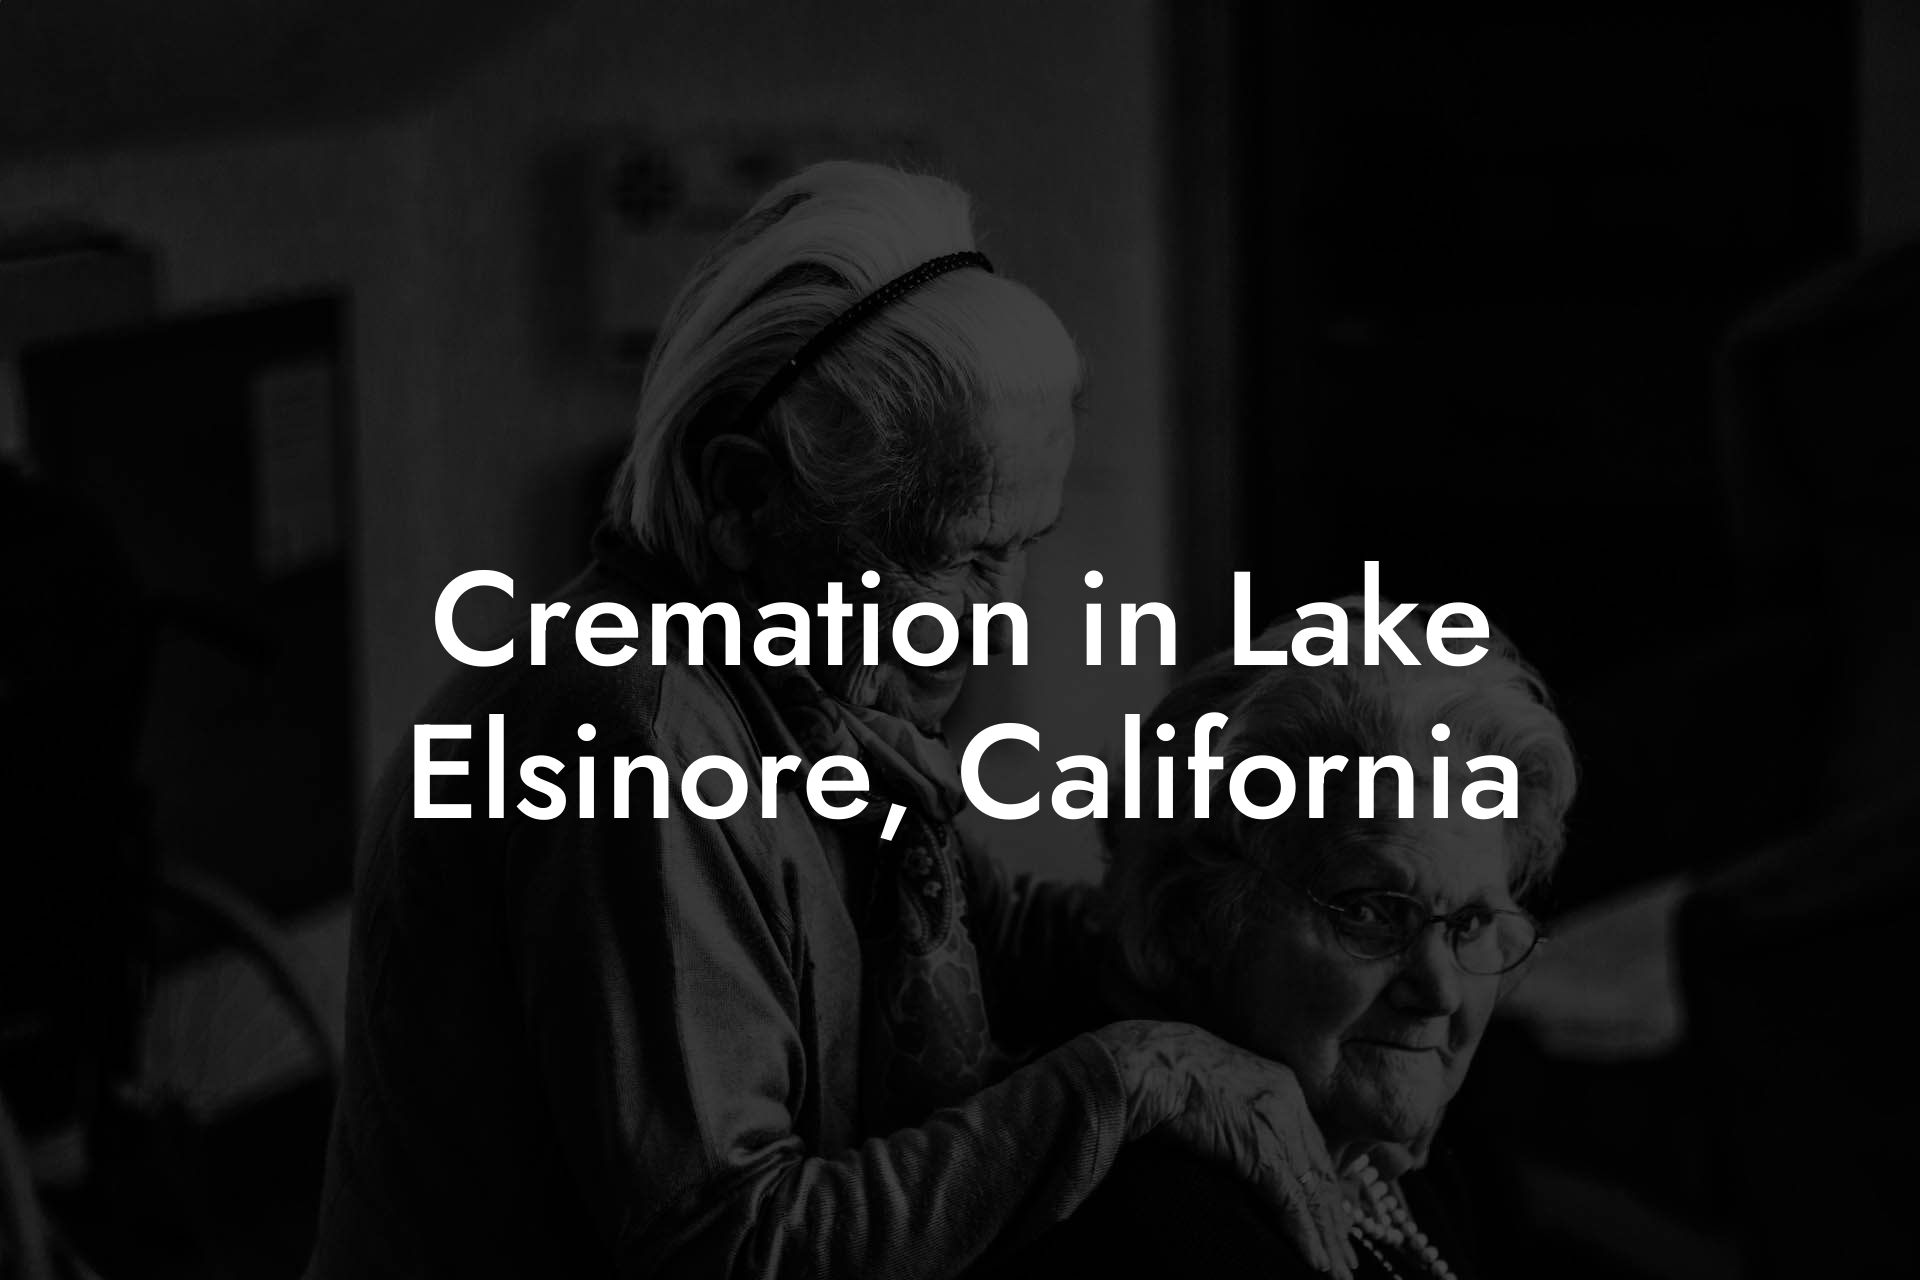 Cremation in Lake Elsinore, California